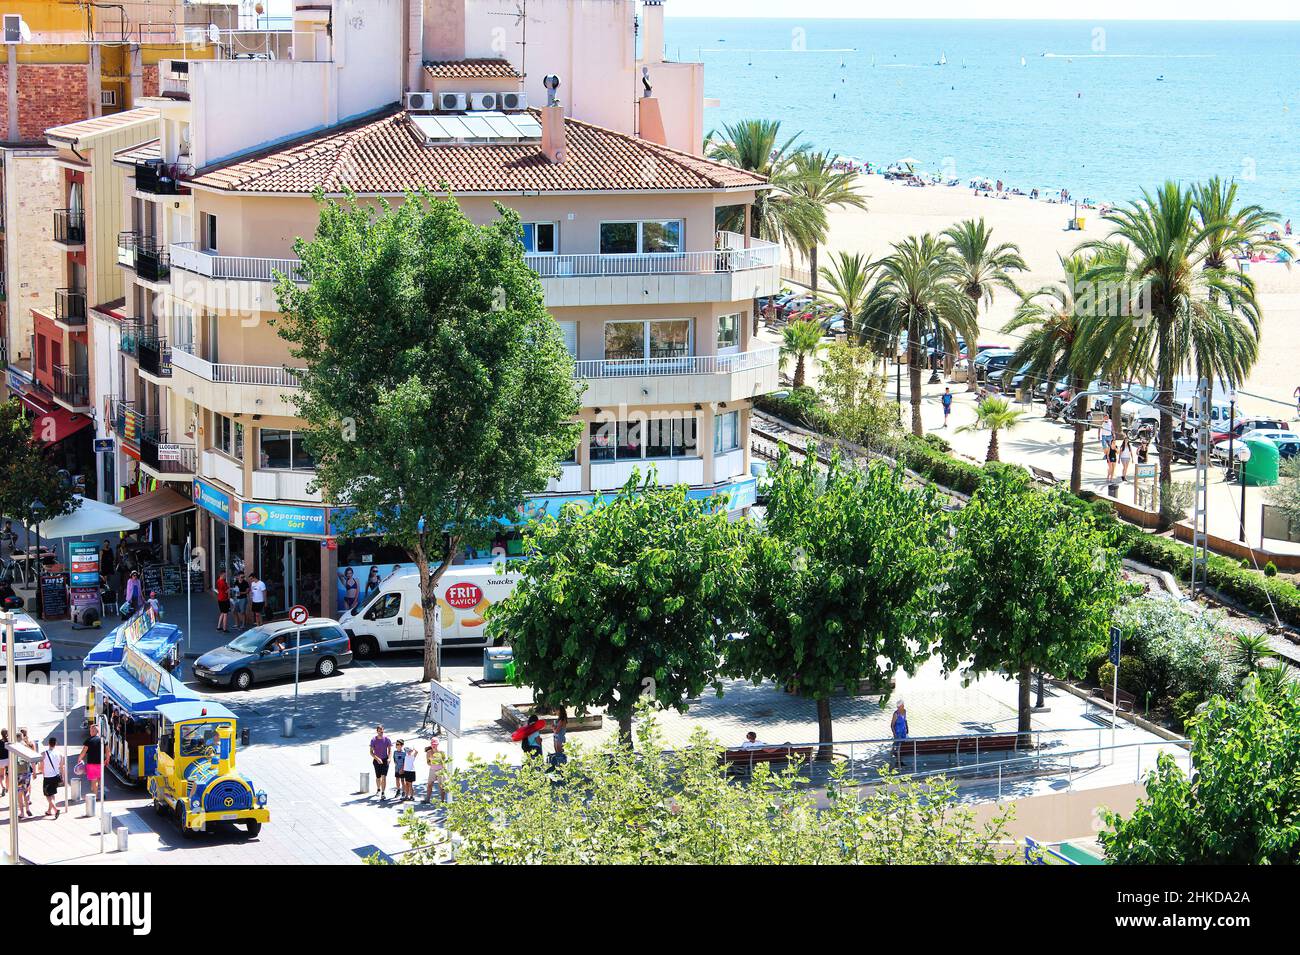 Il centro urbano della bellissima città turistica di Calella, situata sulla Costa Brava, in provincia di Barcellona Foto Stock